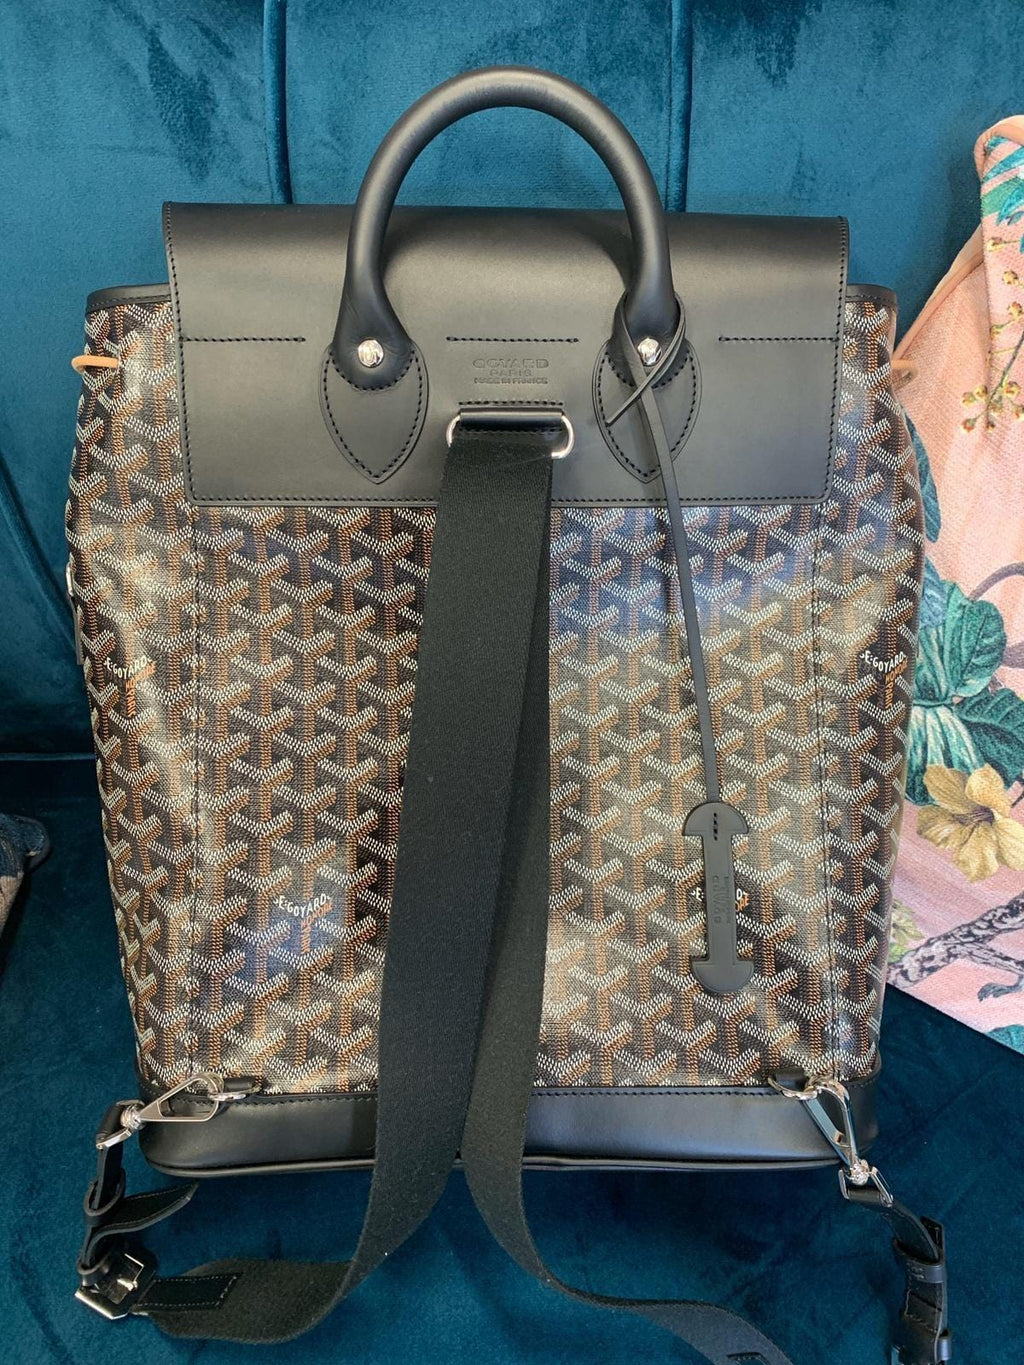 Goyard Steamer Backpack (With Straps)